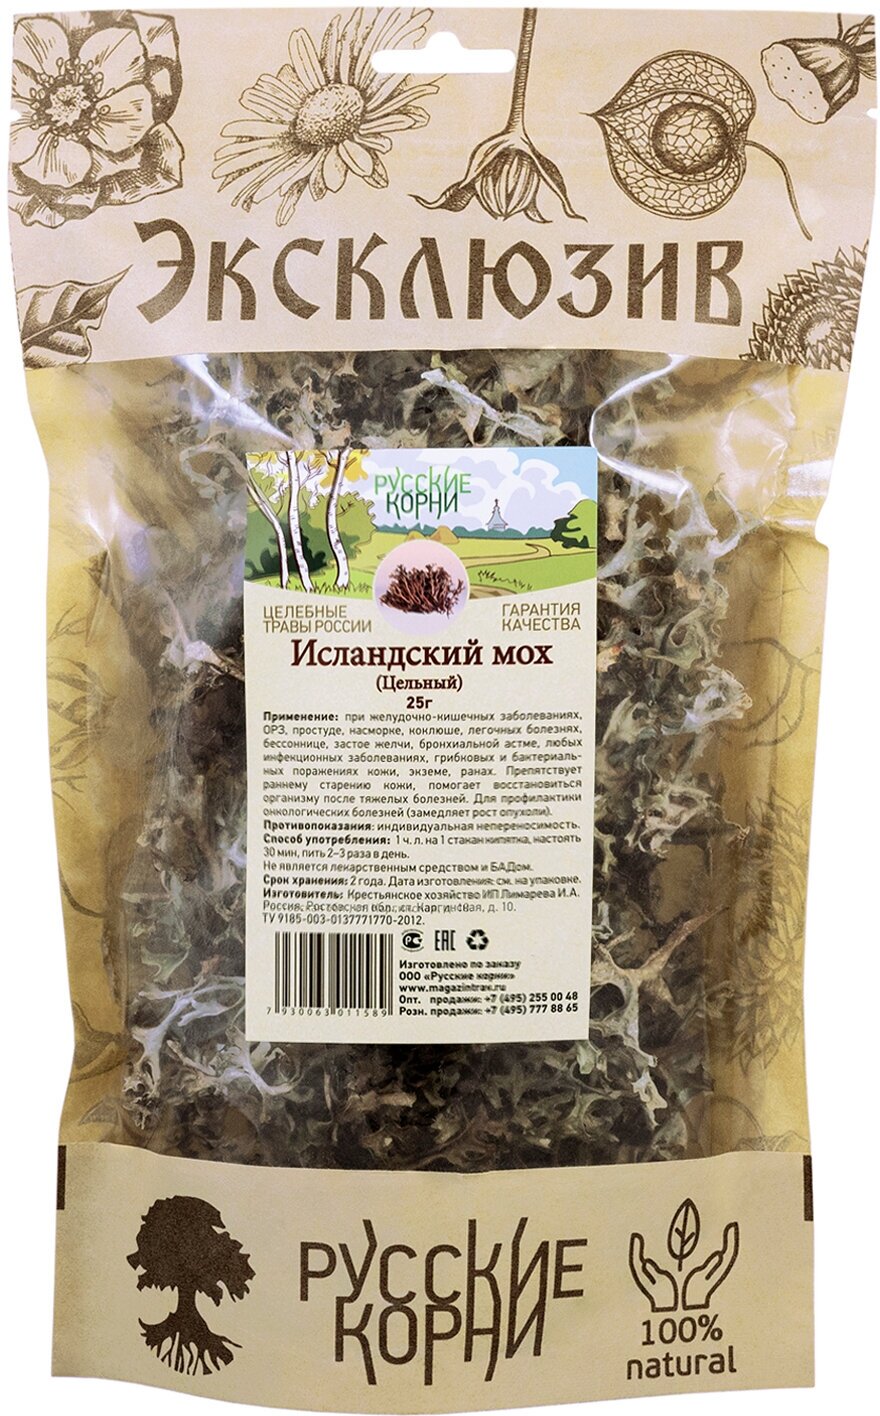 Русские корни мох Исландский (цельный), 25 г